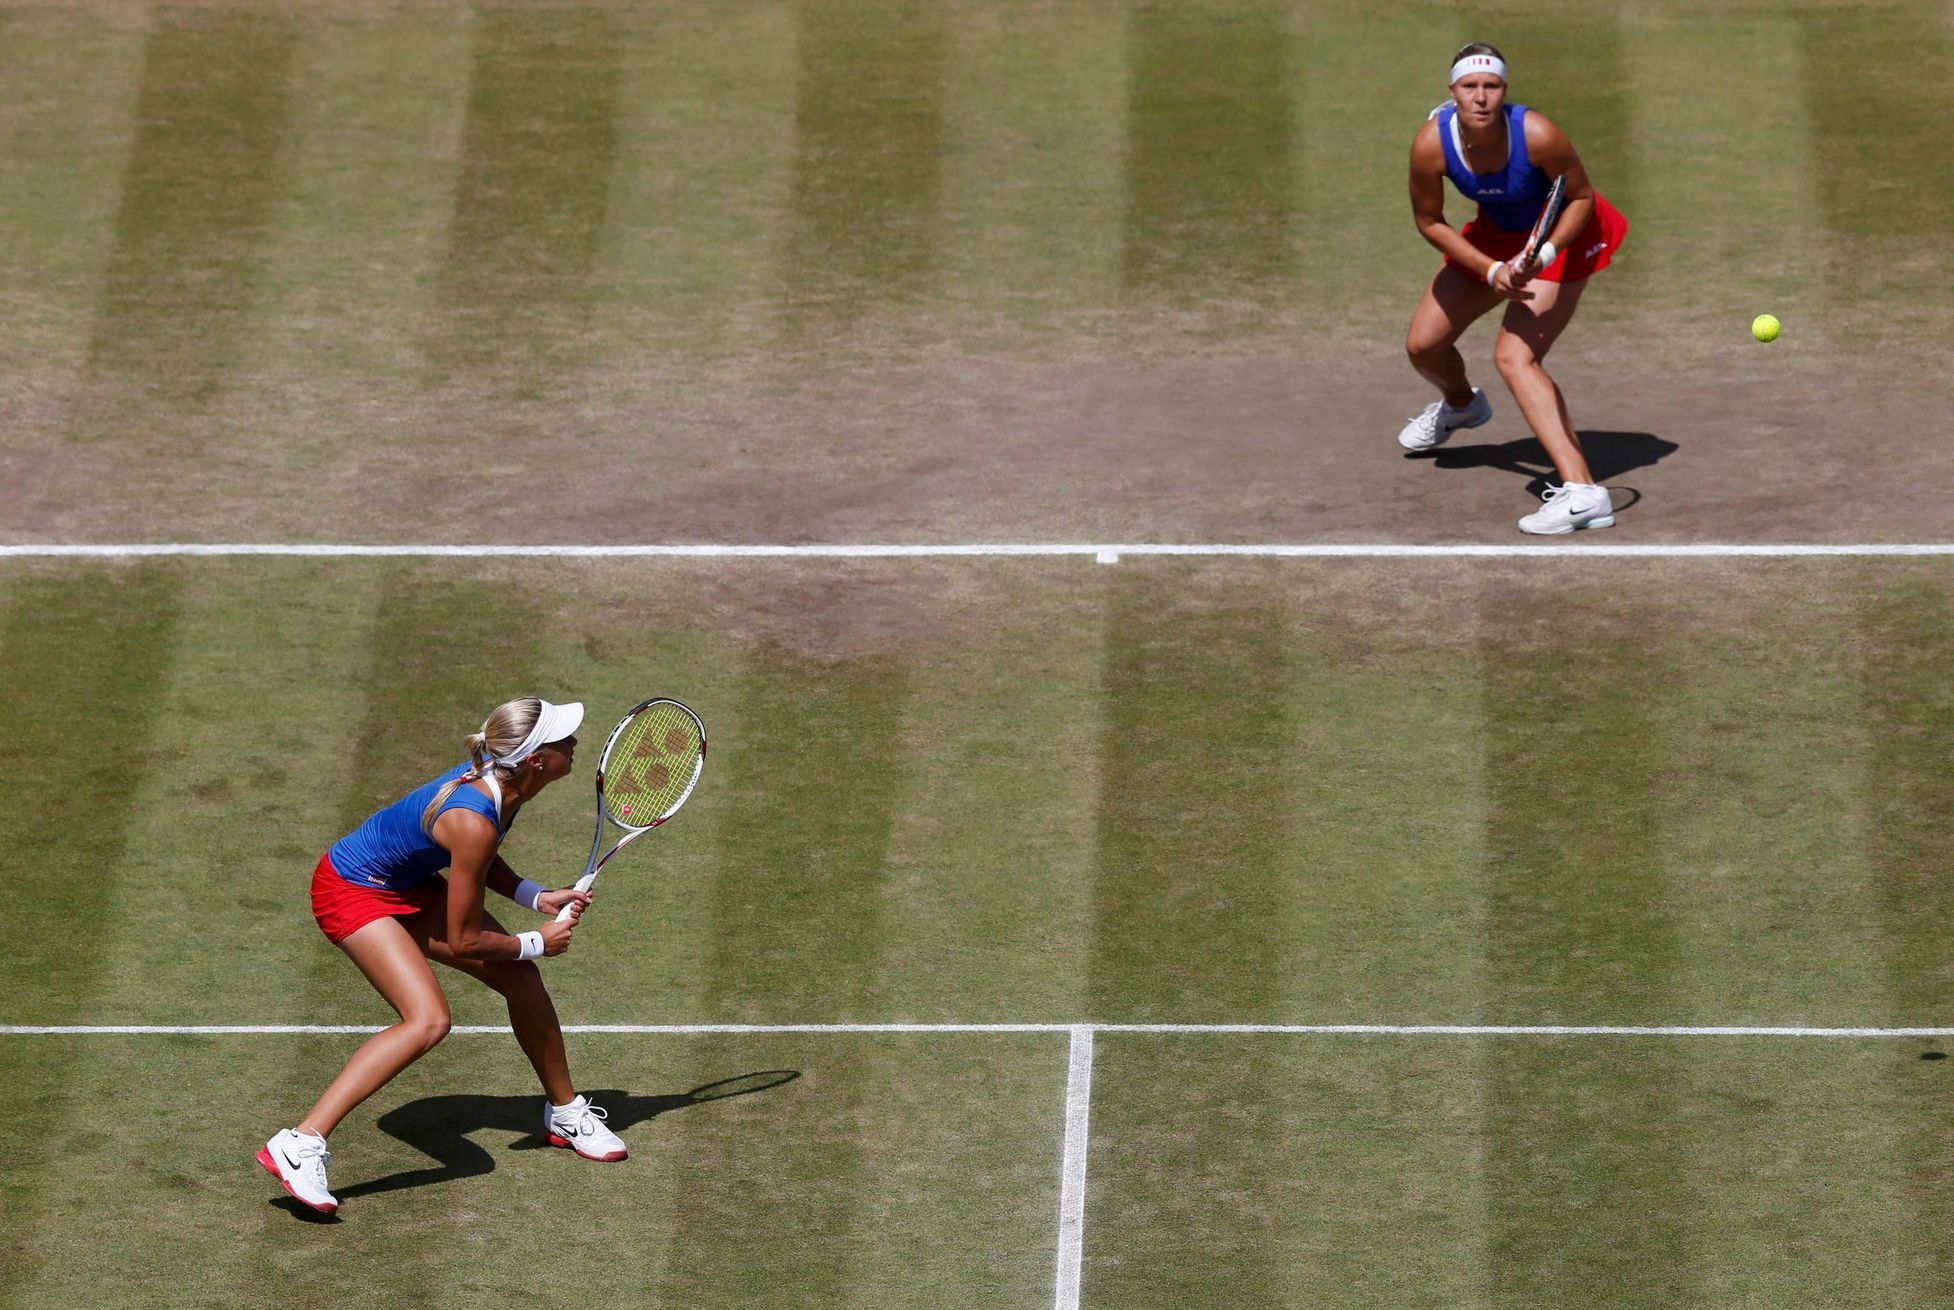 České tenistky Andrea Hlaváčková a Lucie Hradecká v utkání s Liezel Huberová a Lisa Raymondová na OH 2012 v Londýně.